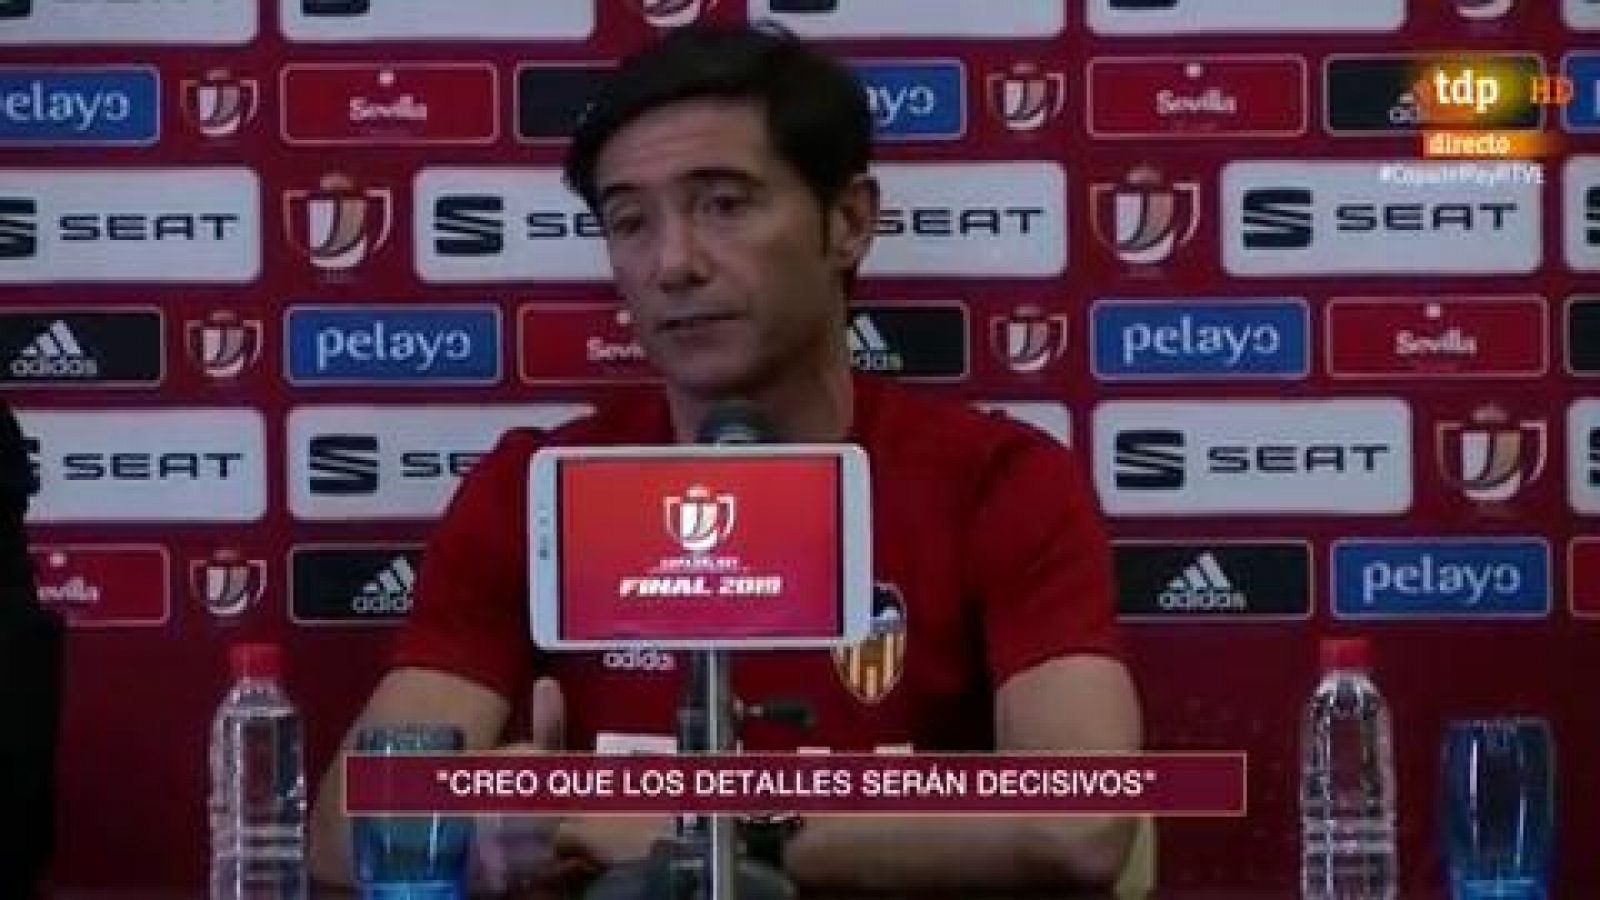 El entrenador del Valencia, Marcelino García Toral, ha dicho que tratarán de detener el juego de Messi pero también espera que "no tenga su mejor día".